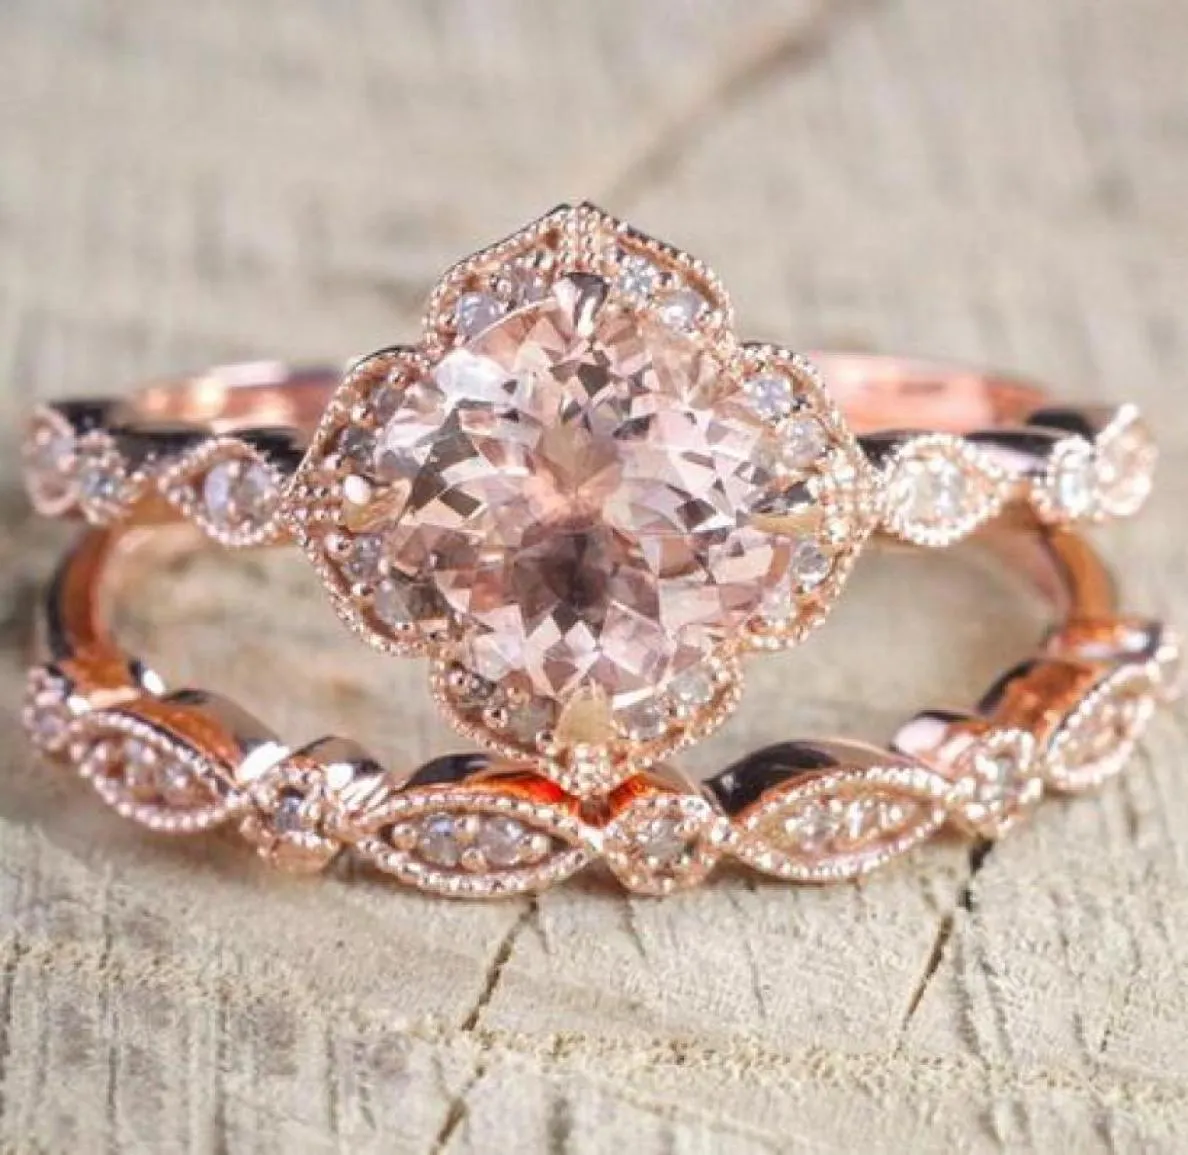 2 PCSset Crystal Ring Jewelry Rose Gold Couleur Anneaux de mariage pour les femmes Girls Engagement Gift Anneau de mariage Set5141461